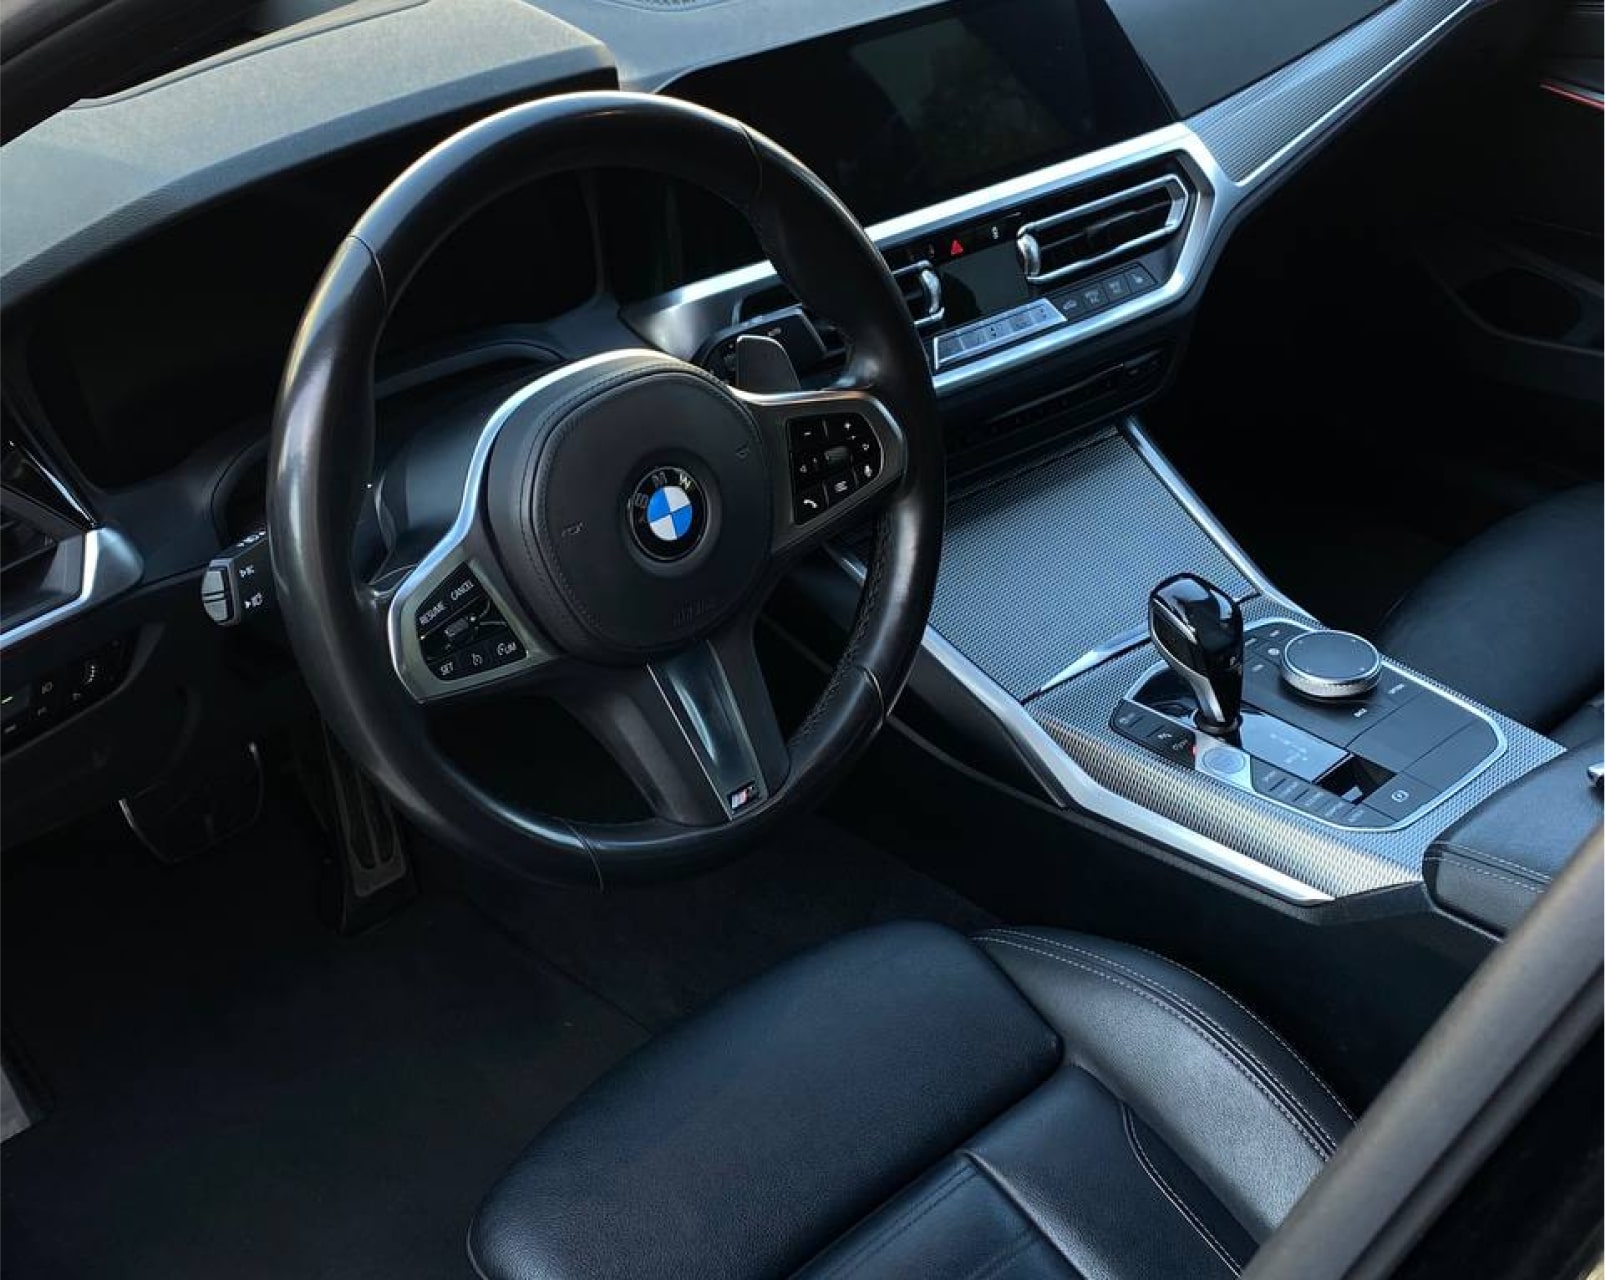 Аренда  BMW 320d G20 M-sport  3 класса 2019 года в городе Минск от 84 $/сутки,  двигатель: Бензин , объем 2.0 литров, КАСКО (Мультидрайв), без водителя, вид 2 - West Group